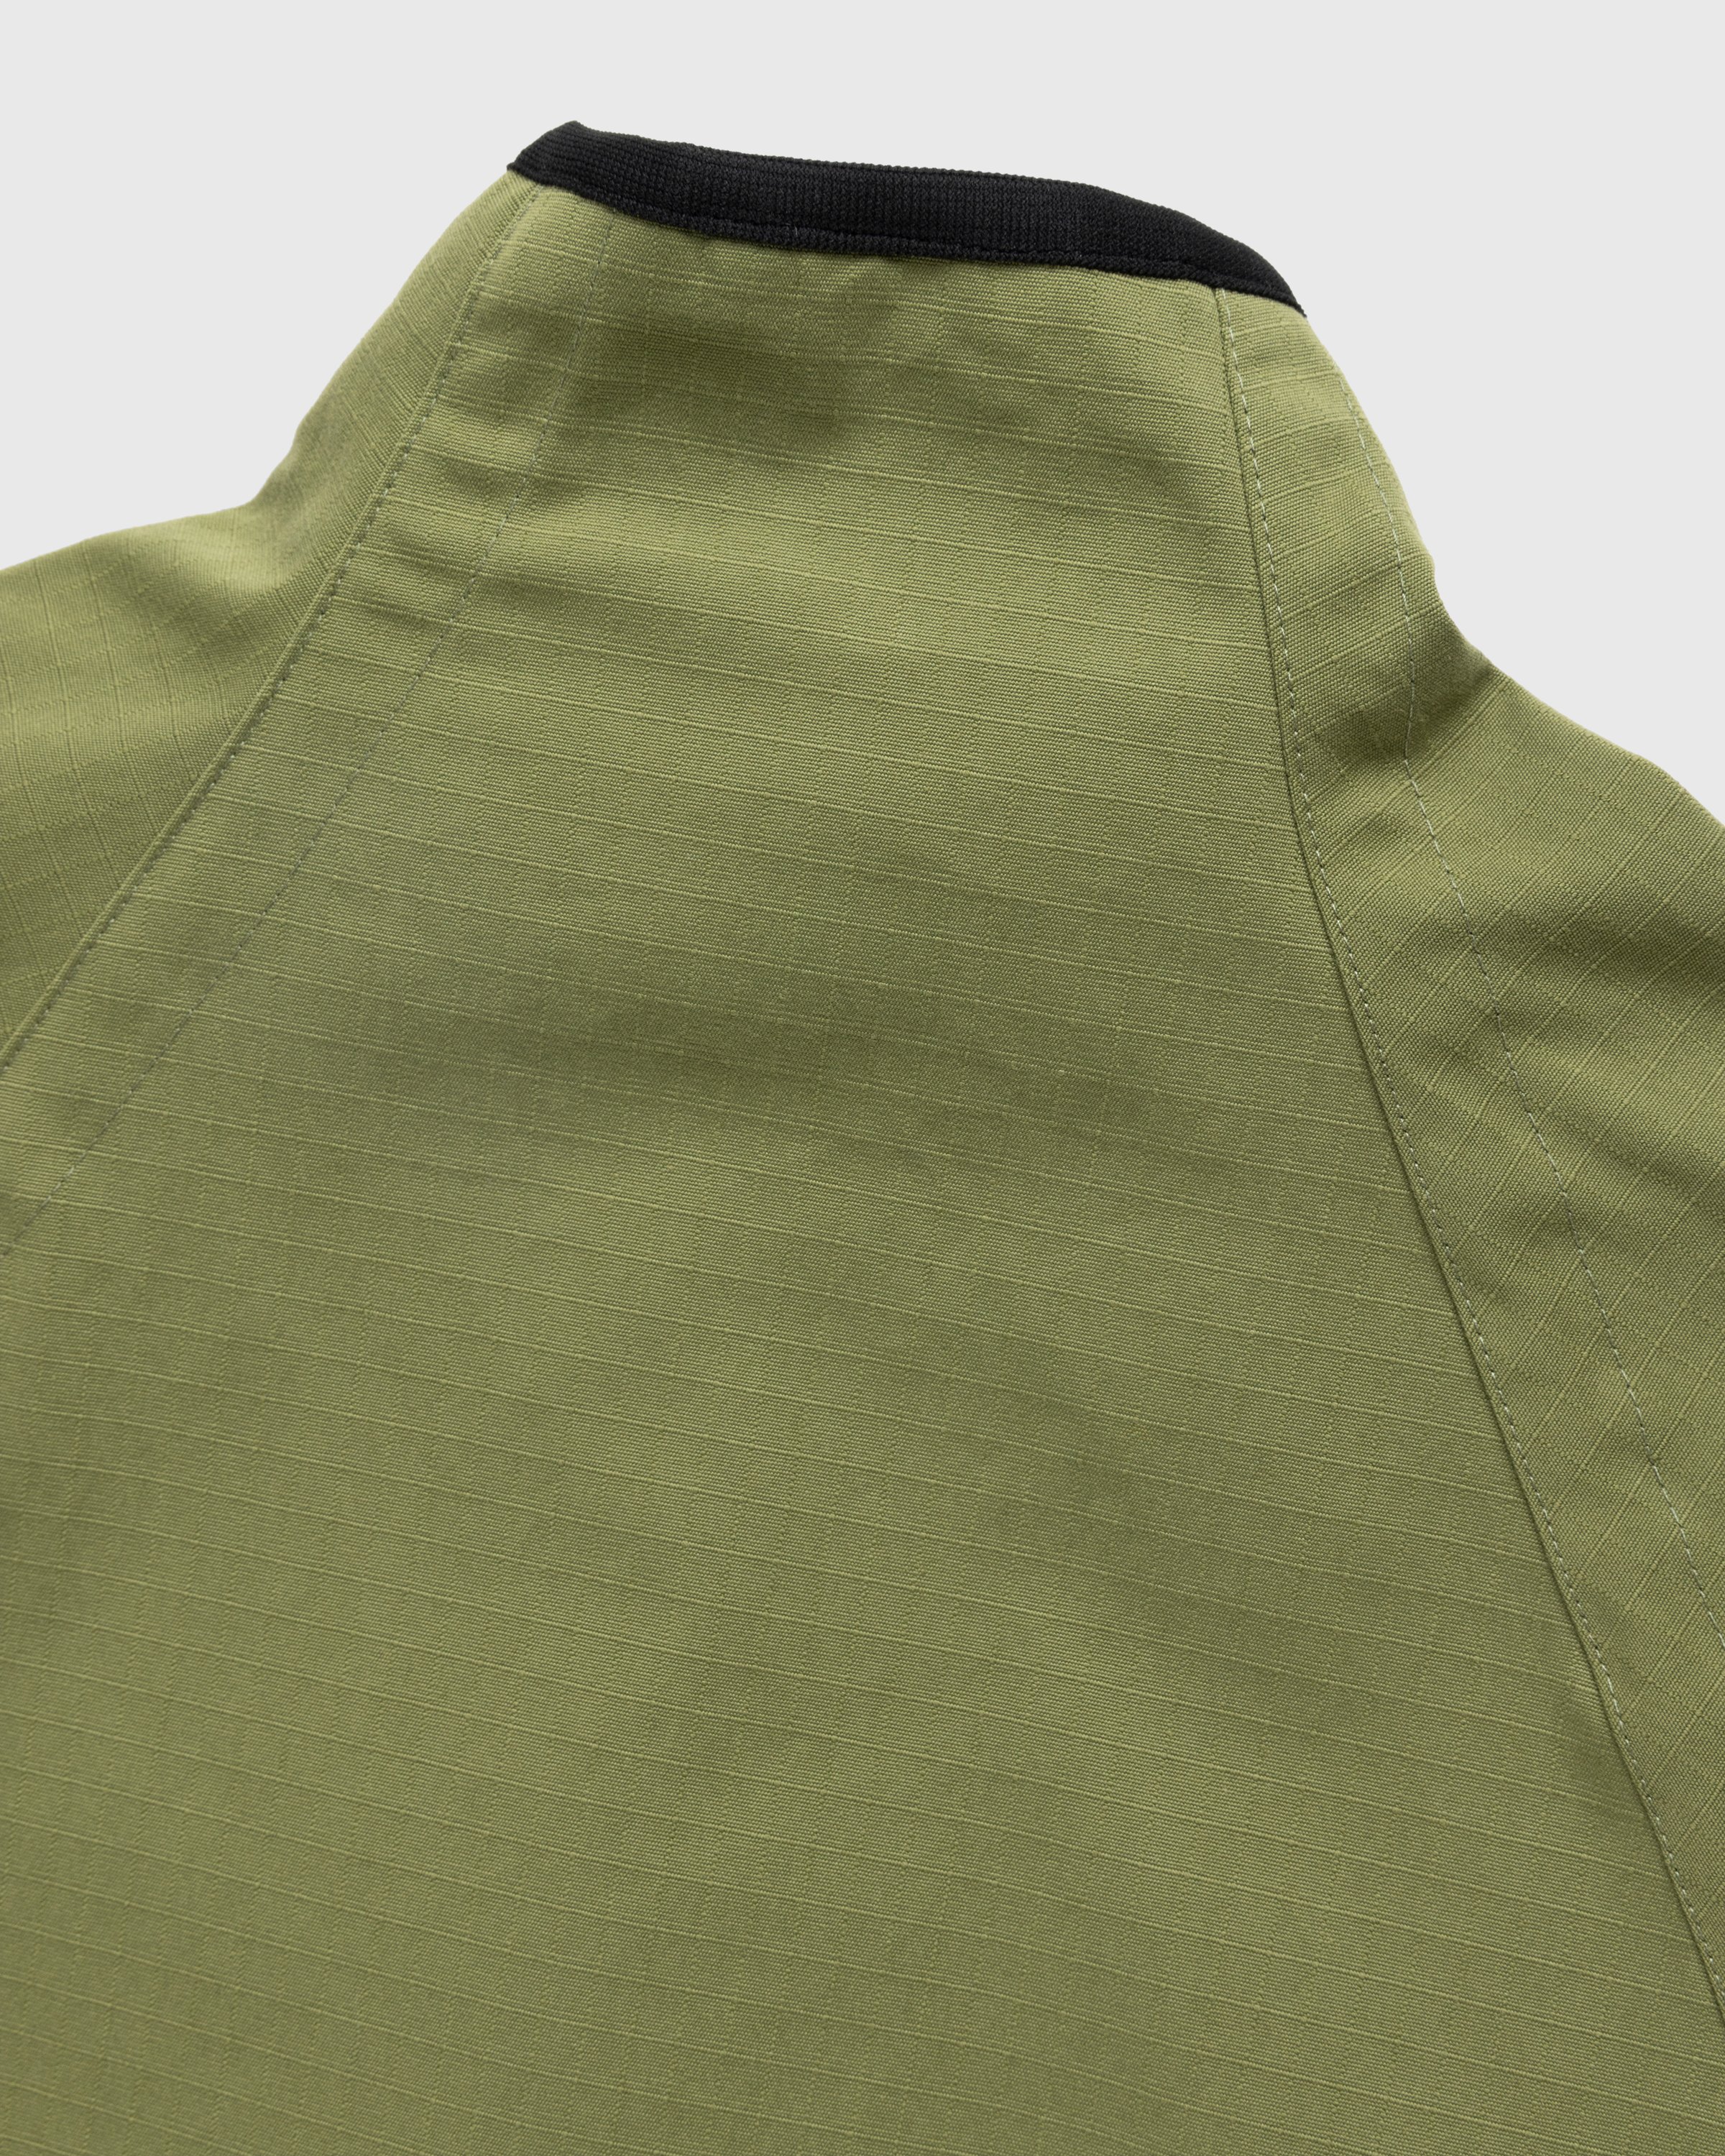 RANRA - Ganga Jacket Khaki - Clothing - Green - Image 5